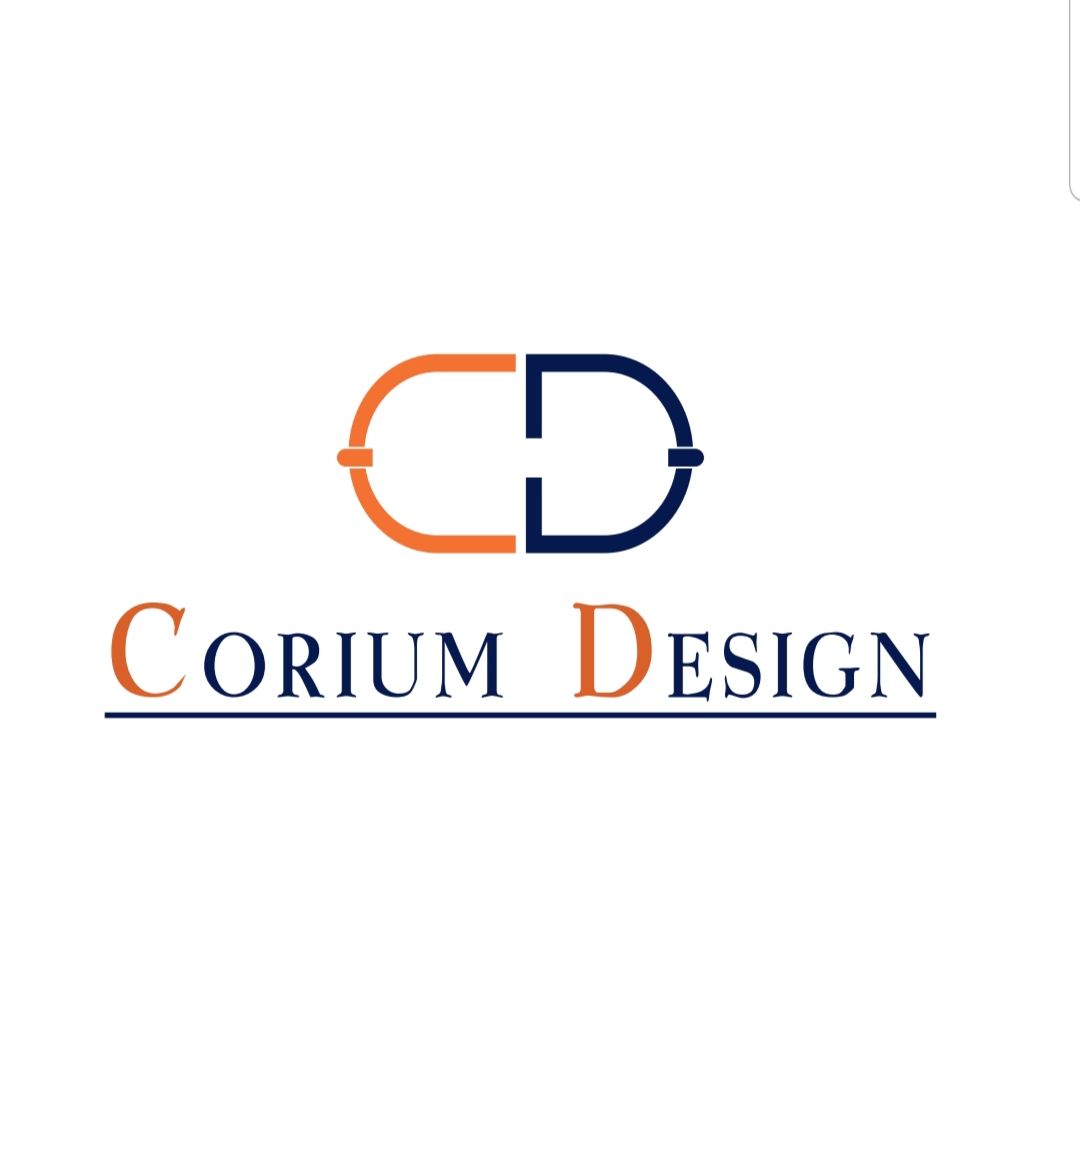 Corium Design